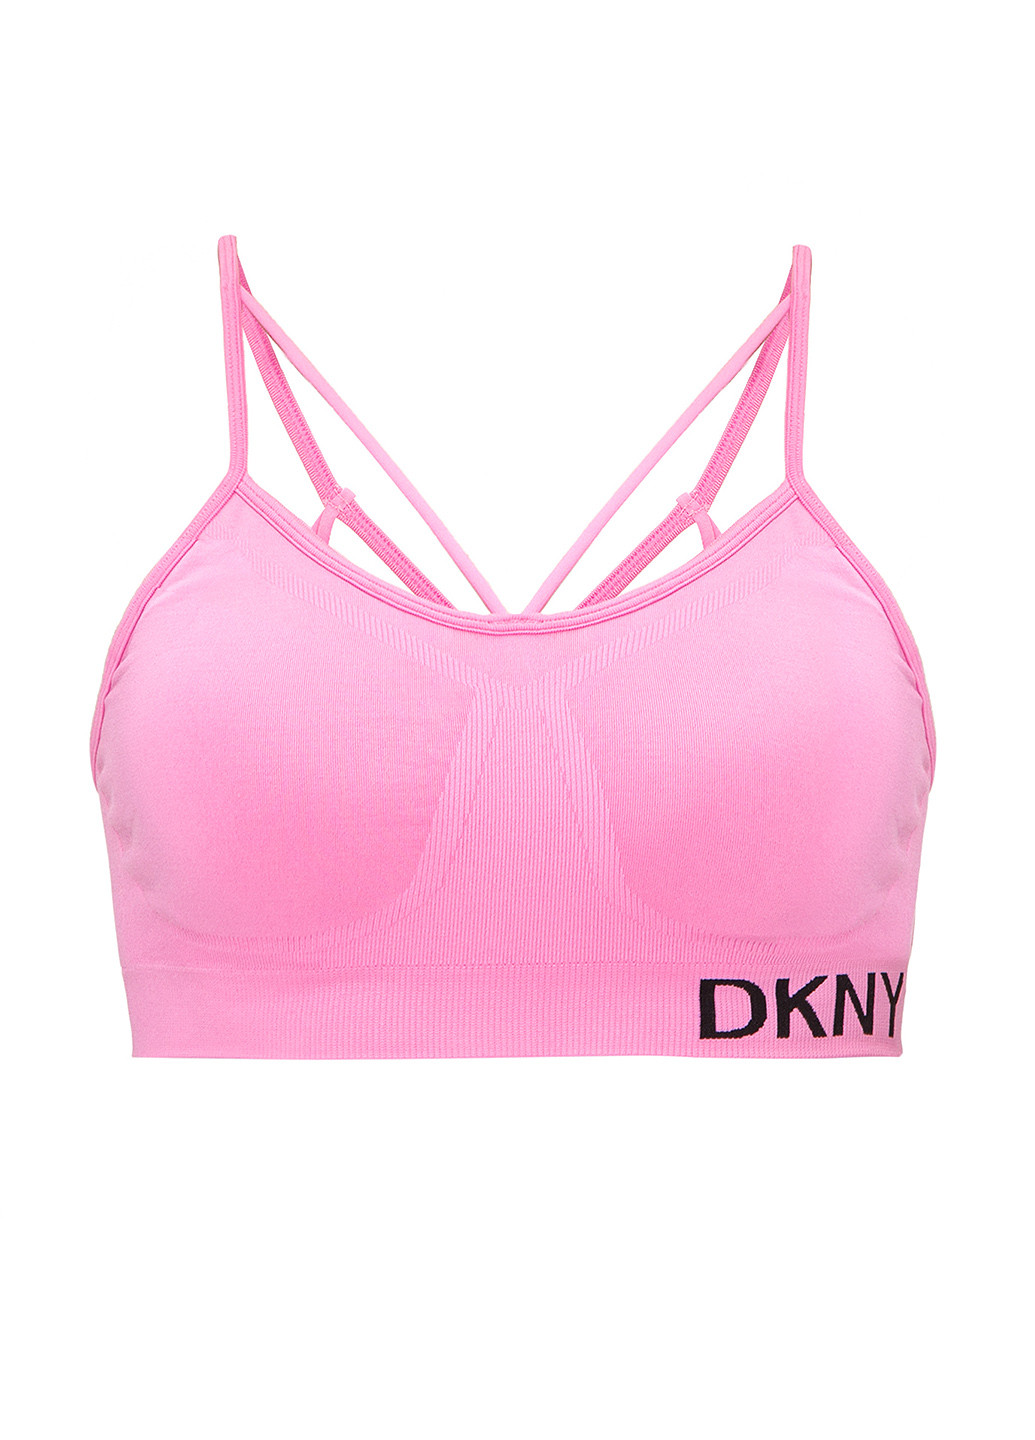 Розовый топ бюстгальтер DKNY без косточек хлопок